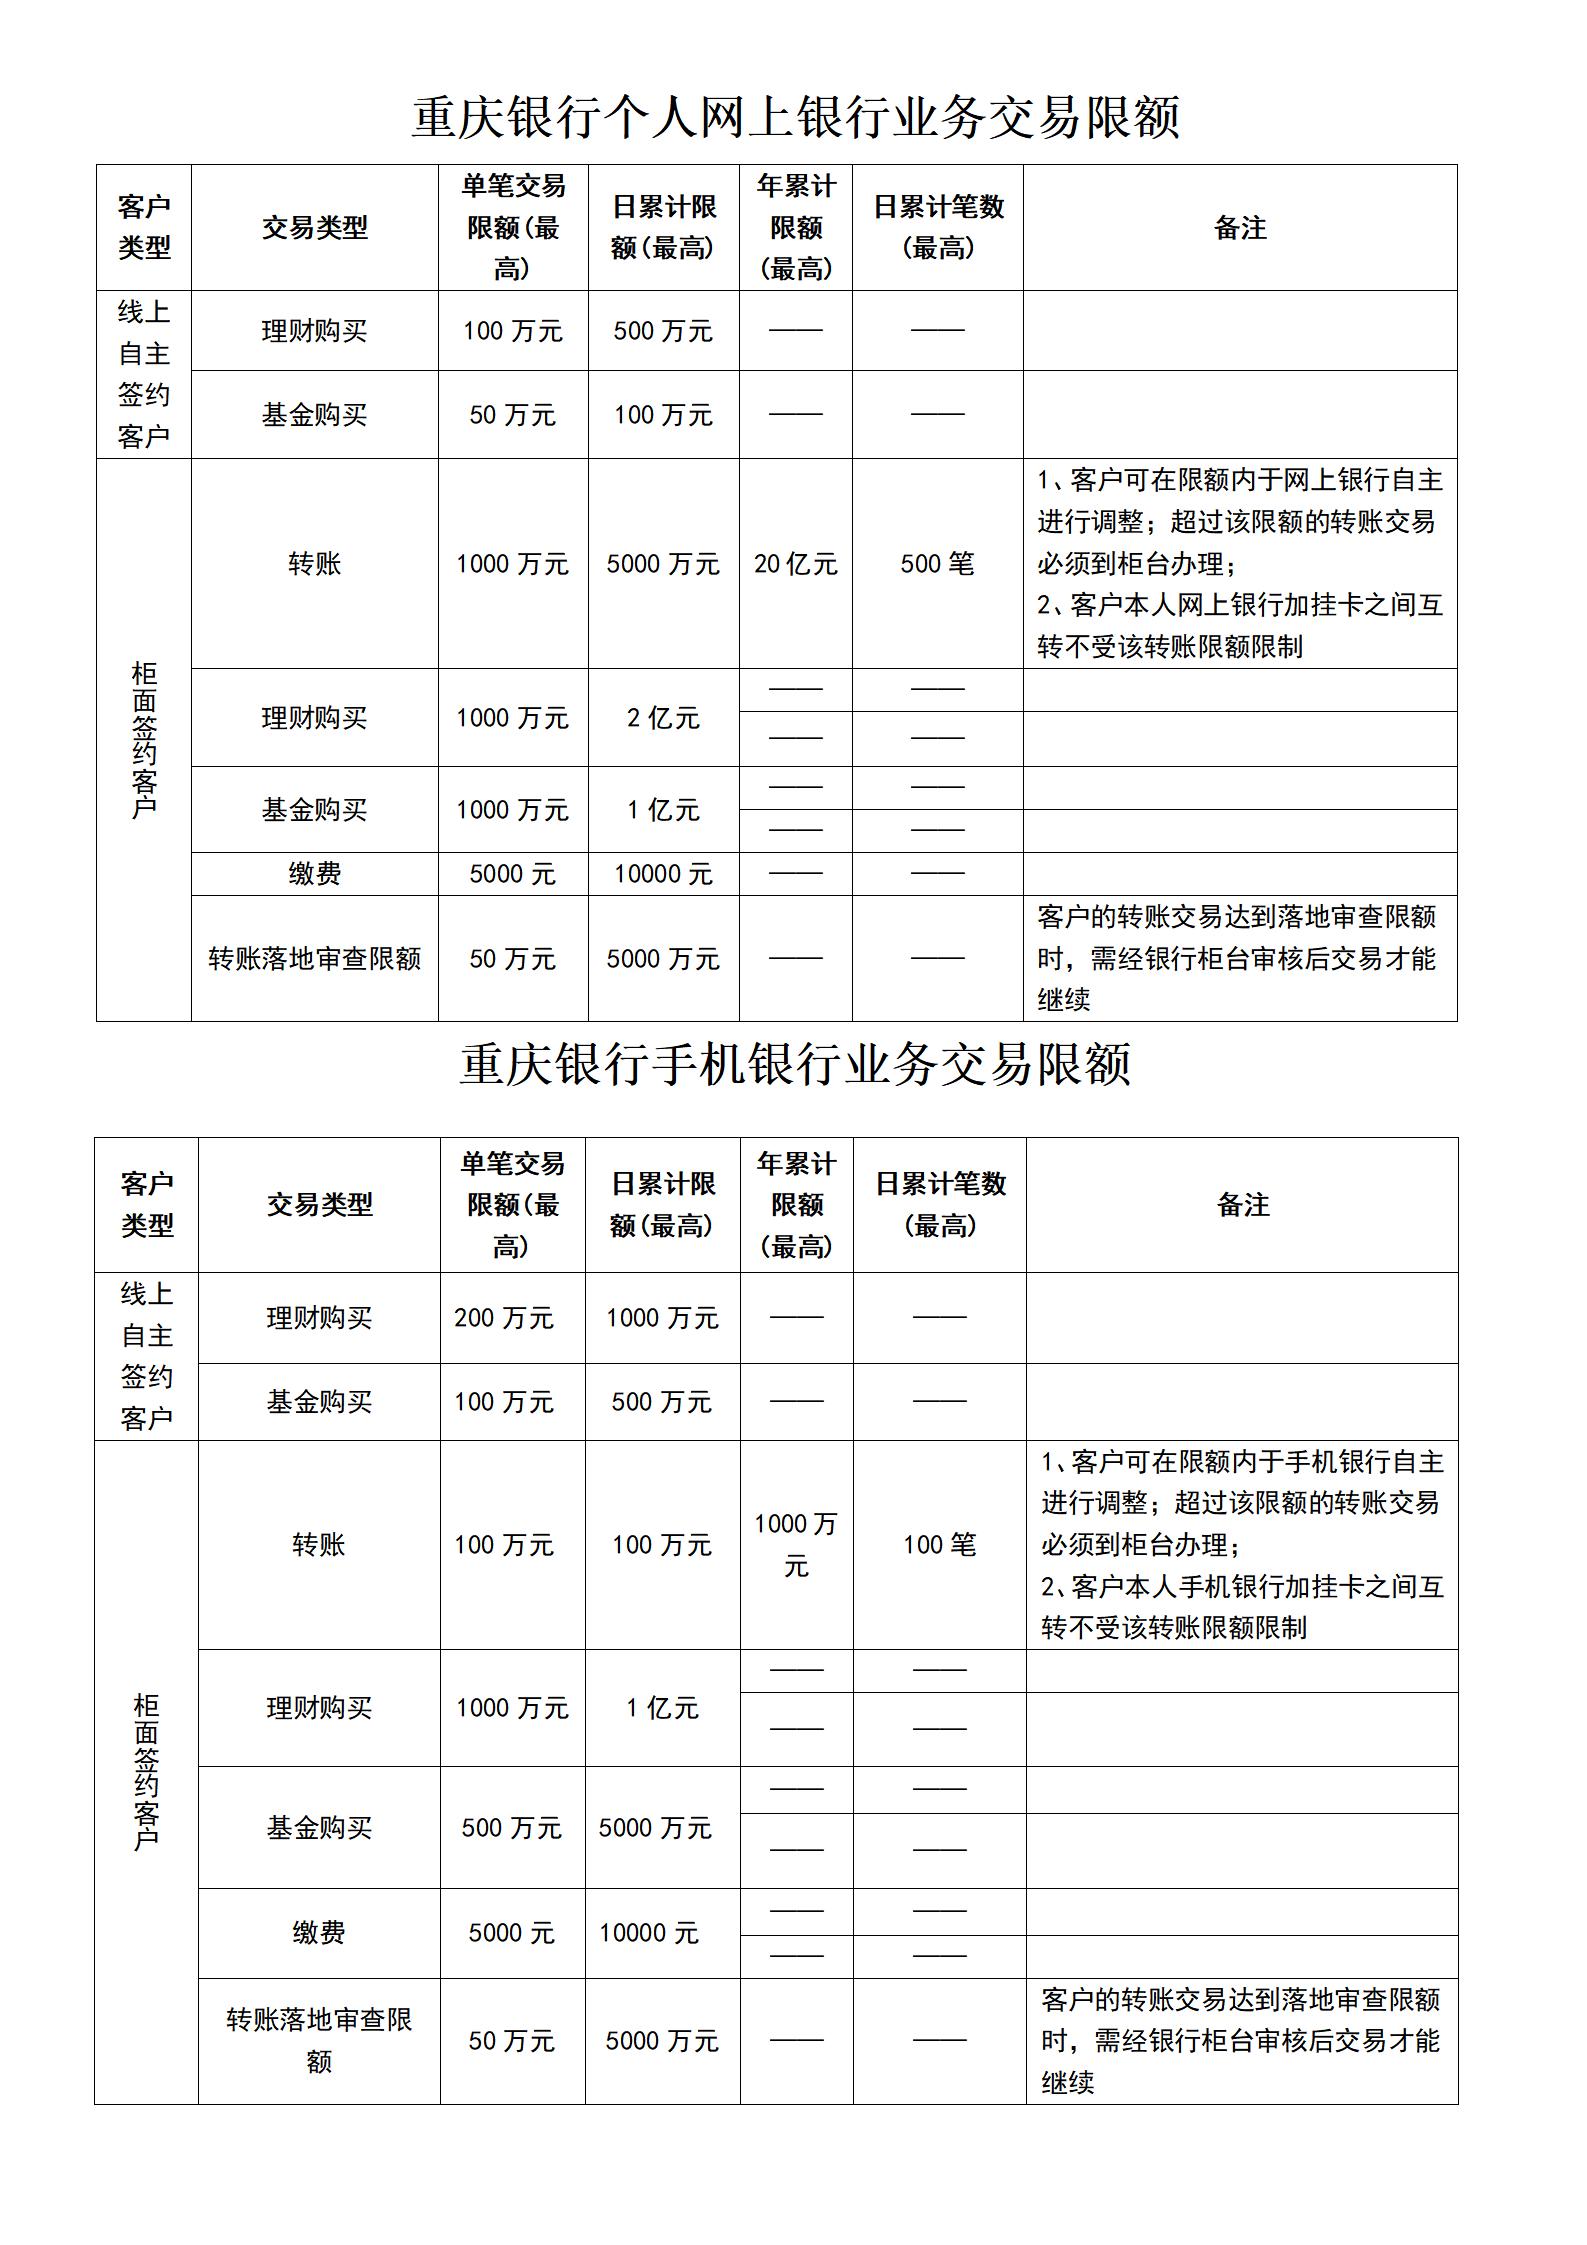 重庆银行个人电子银行业务交易限额.jpg